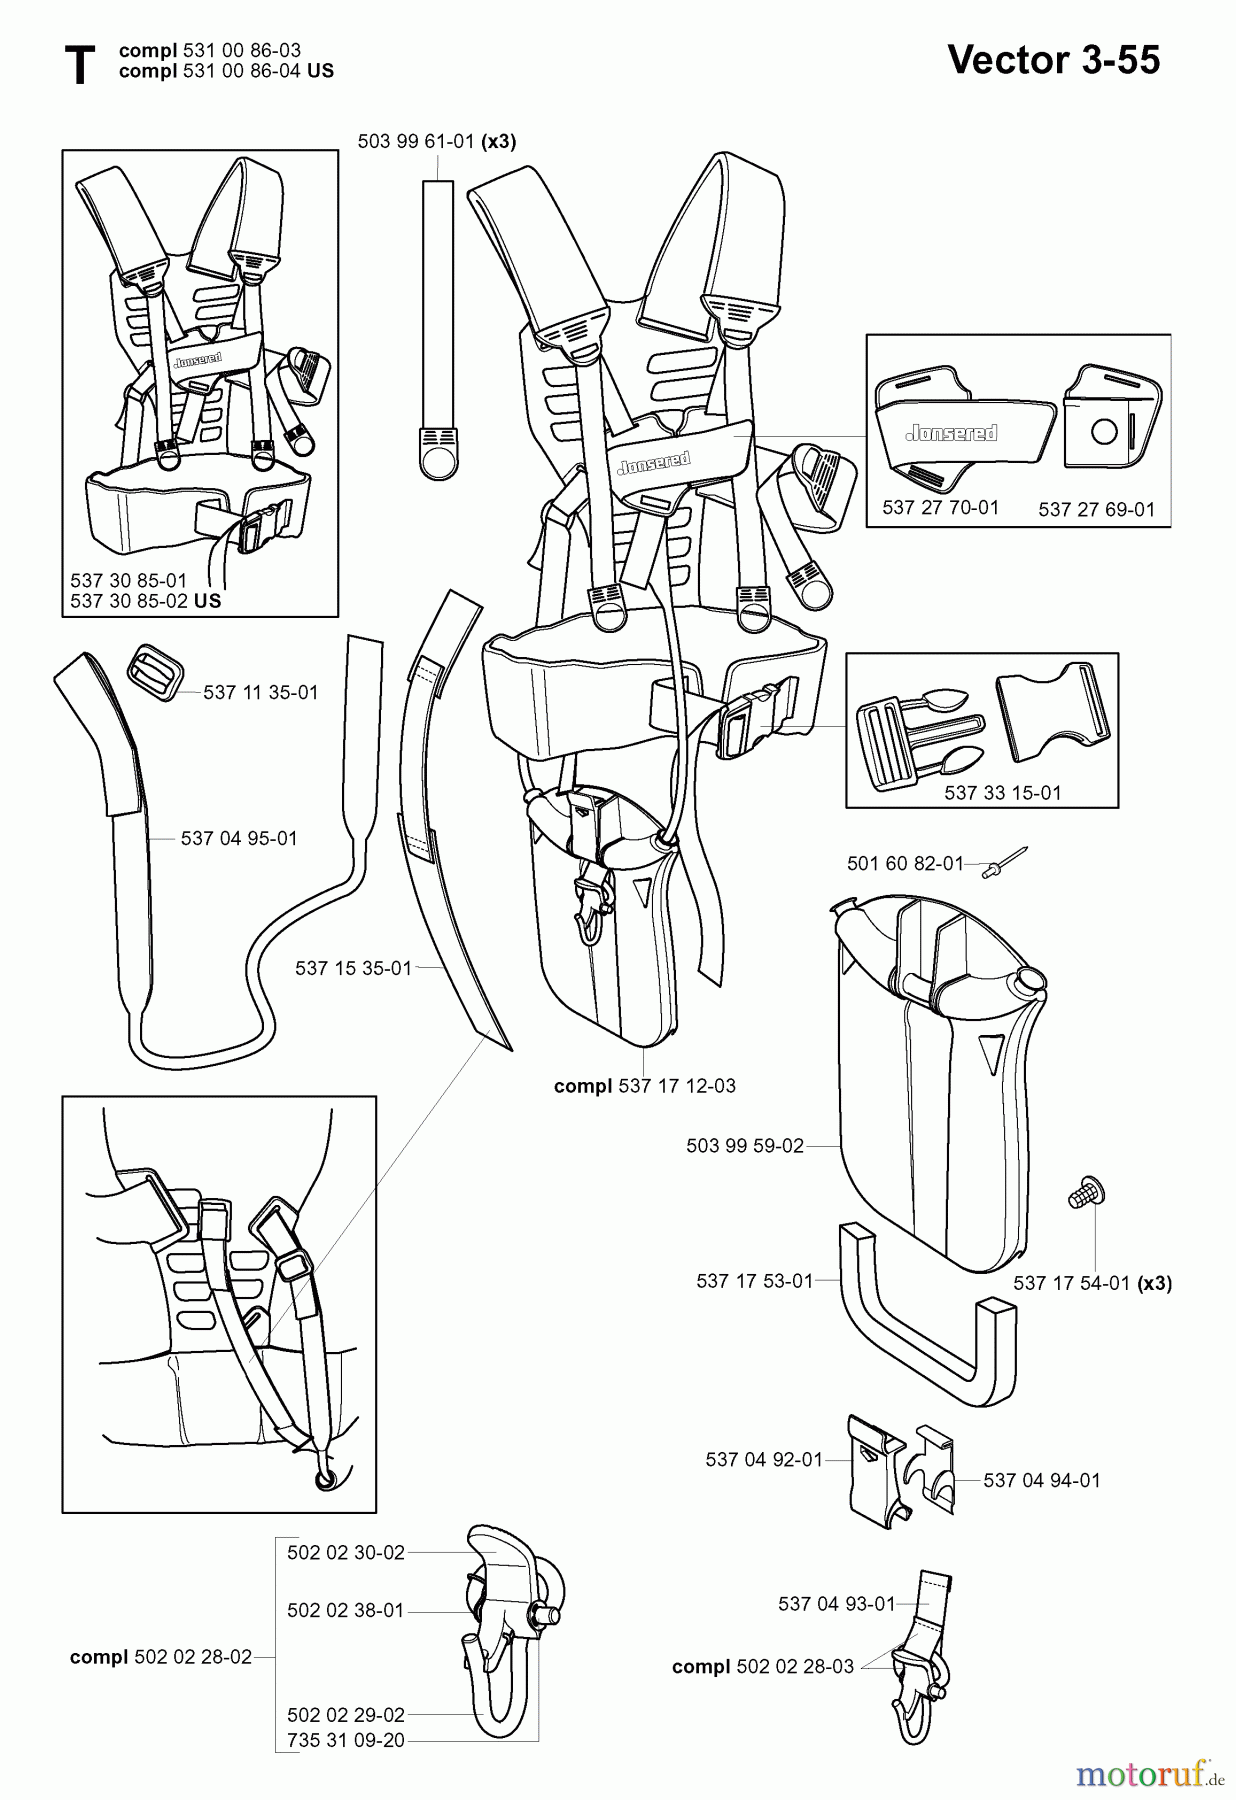  Jonsered Motorsensen, Trimmer RS44 EPA - Jonsered String/Brush Trimmer (2006-01) HARNESS #1